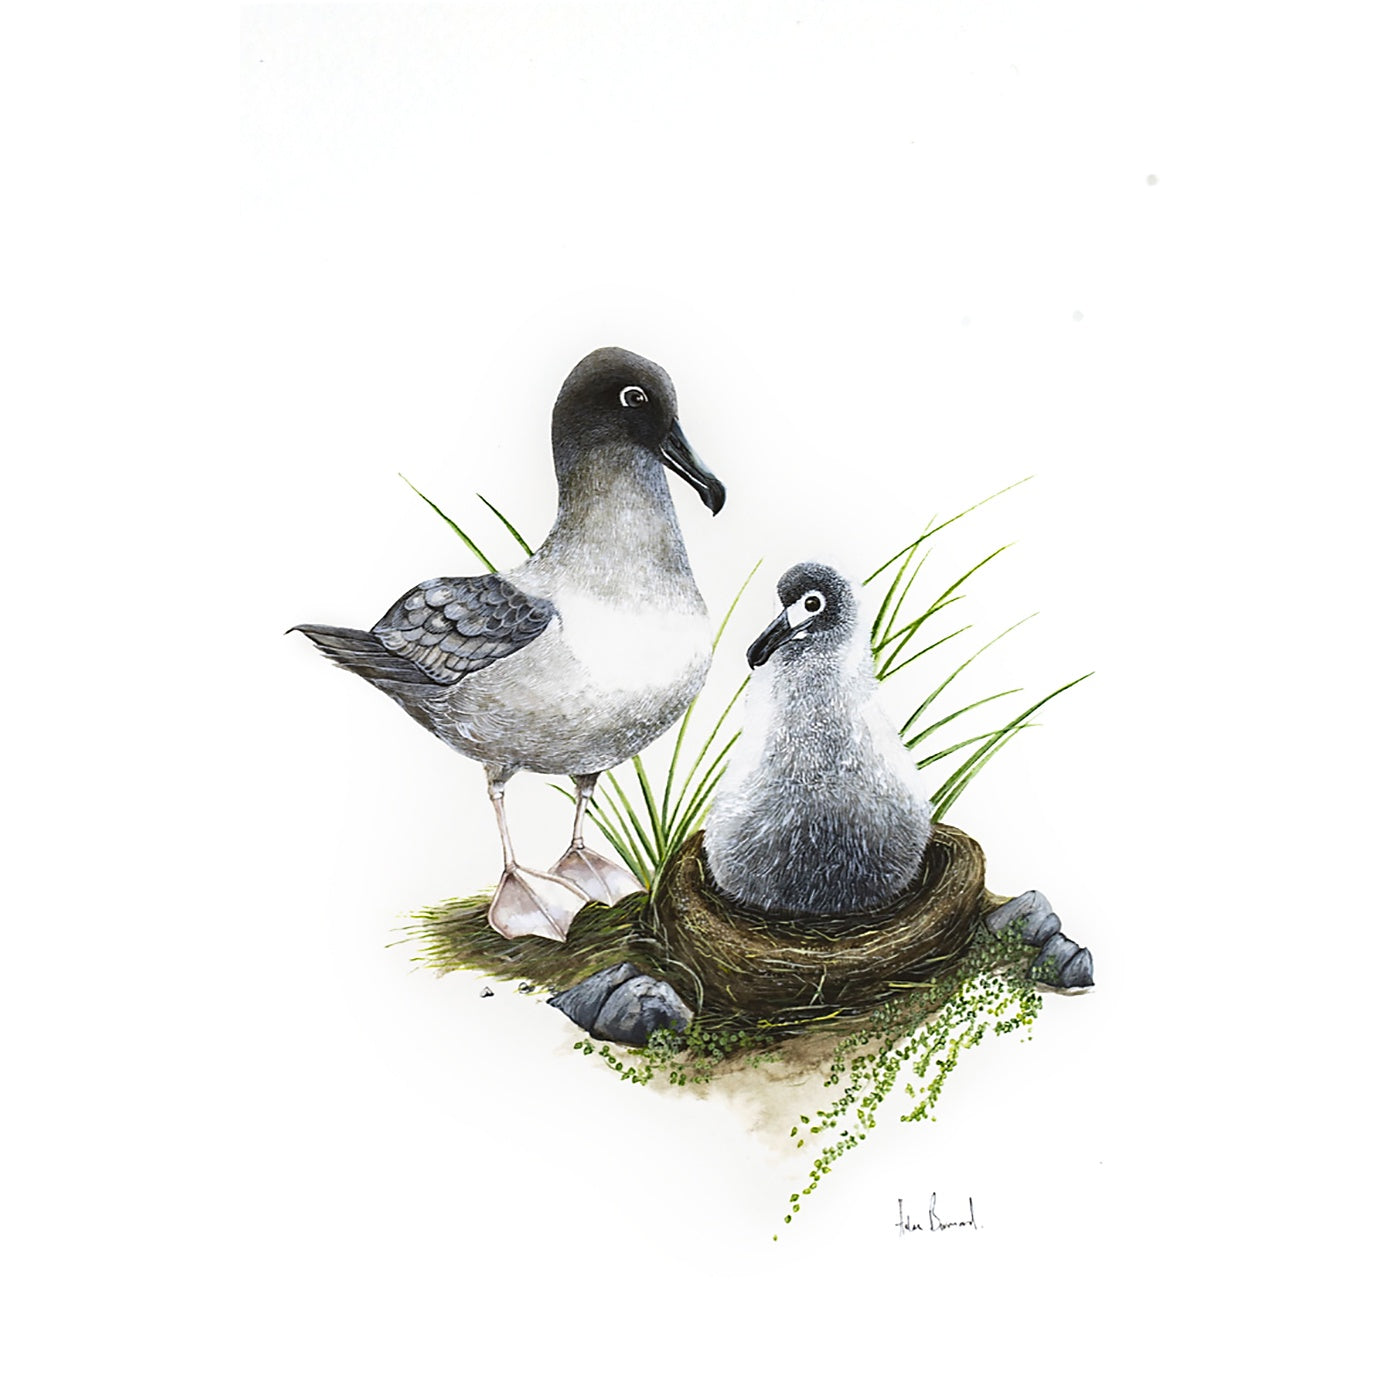 The Little Wren - Art Print - Light-mantled Sooty Albatross